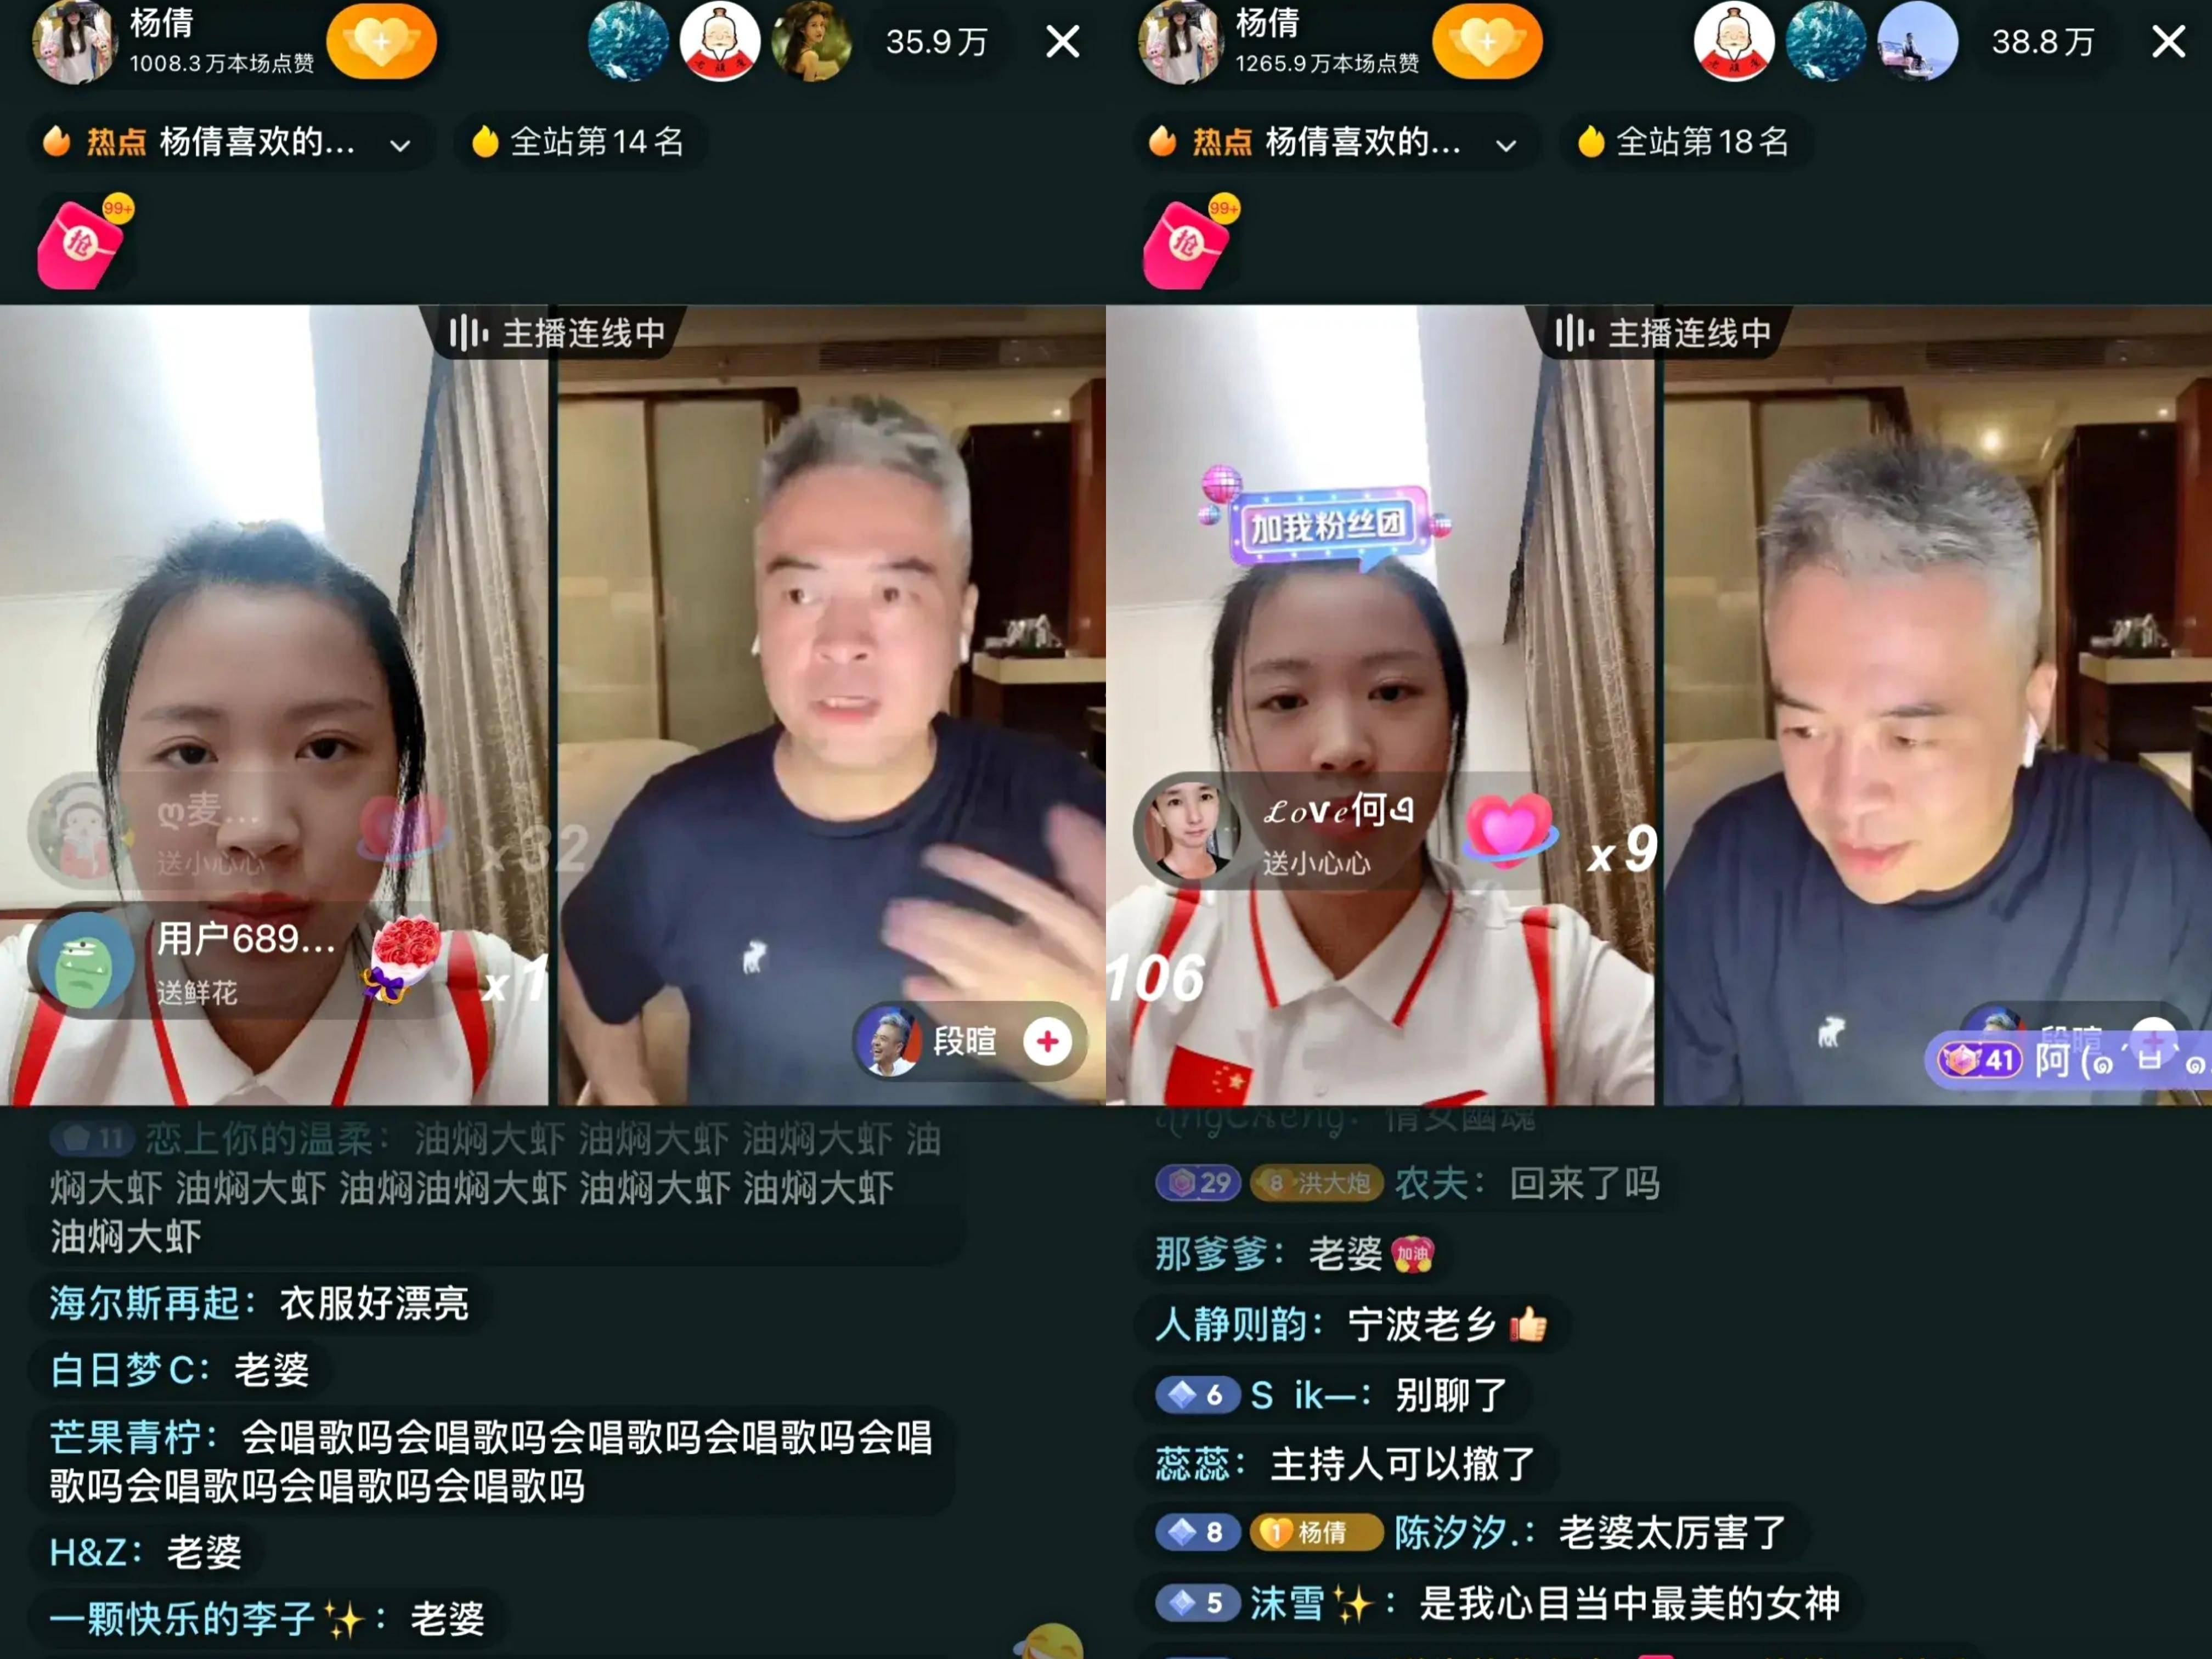 短视频和直播成关注奥运新方式,178位中国代表团运动员入驻抖音受追捧